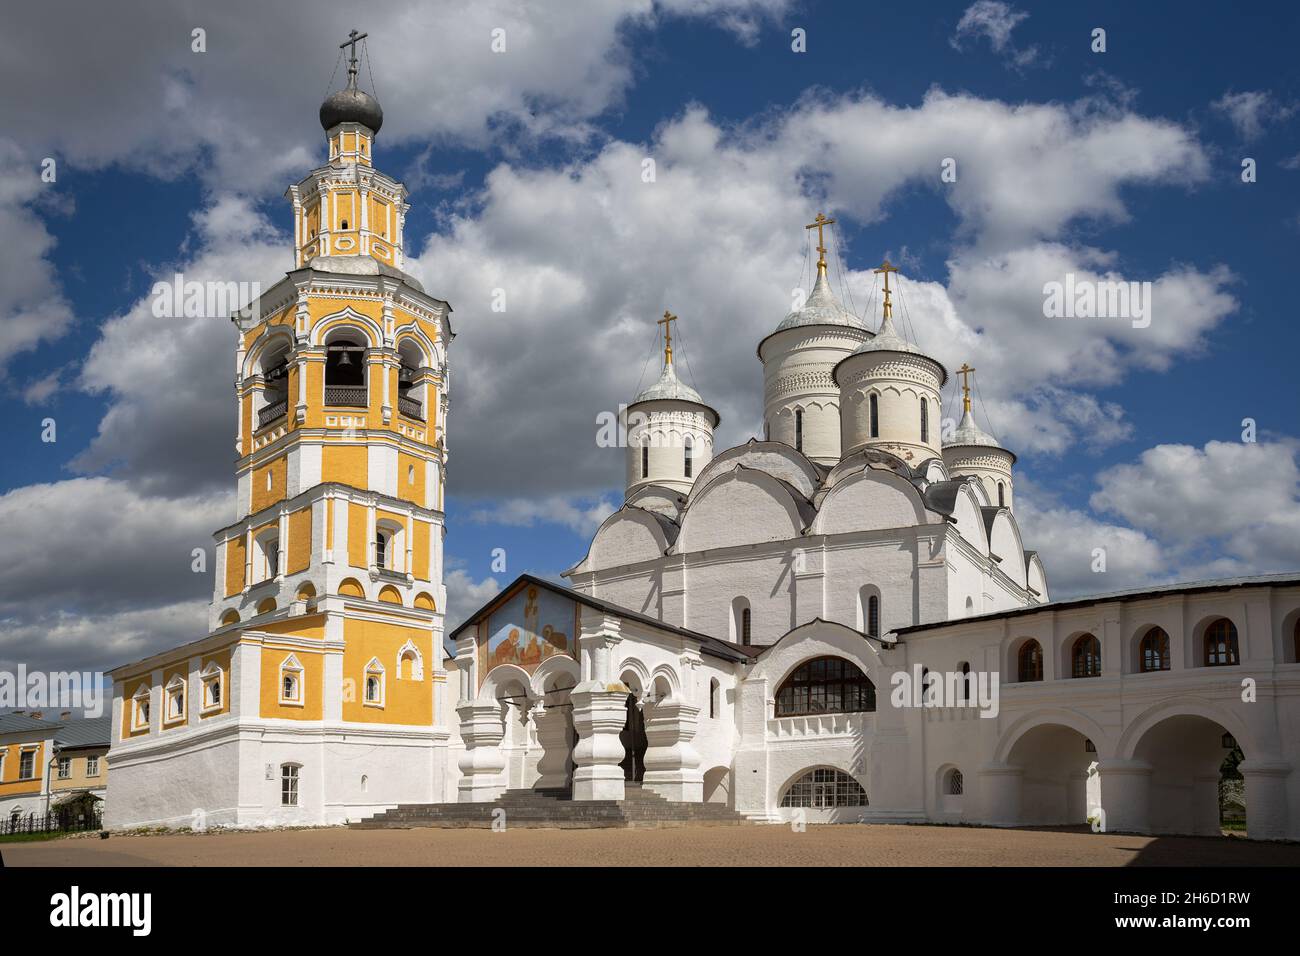 Cathédrale de la Transfiguration du Sauveur et clocher du monastère de Spaso-Prilutsky, Vologda, Russie Banque D'Images